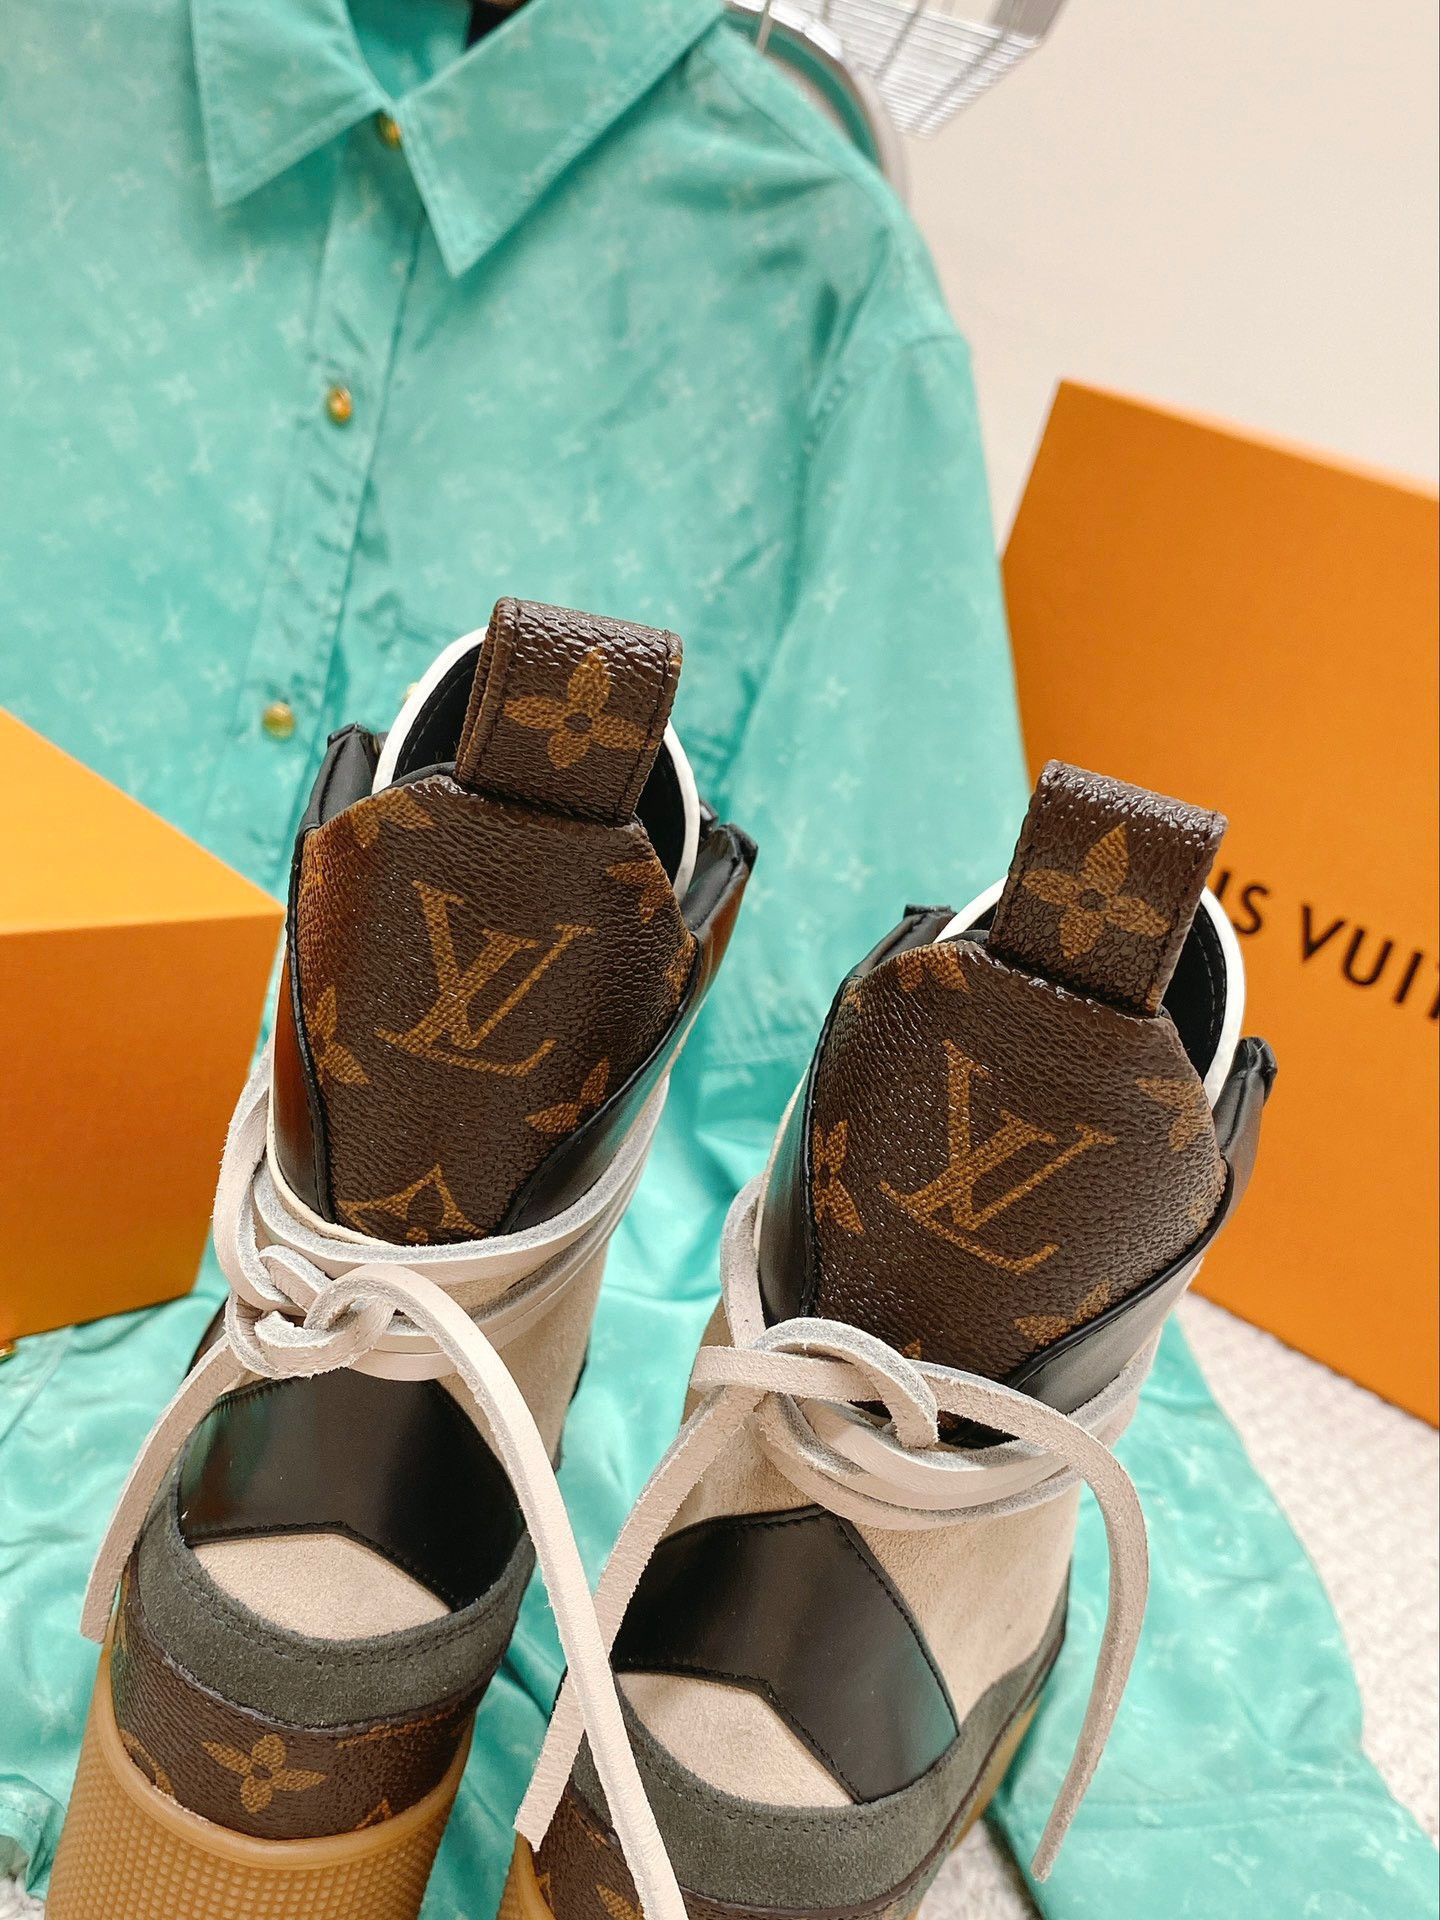 Louis Vuitton Damier Leather Flat Sandal Brown UK8 US8.5 EU41.5 Authentic